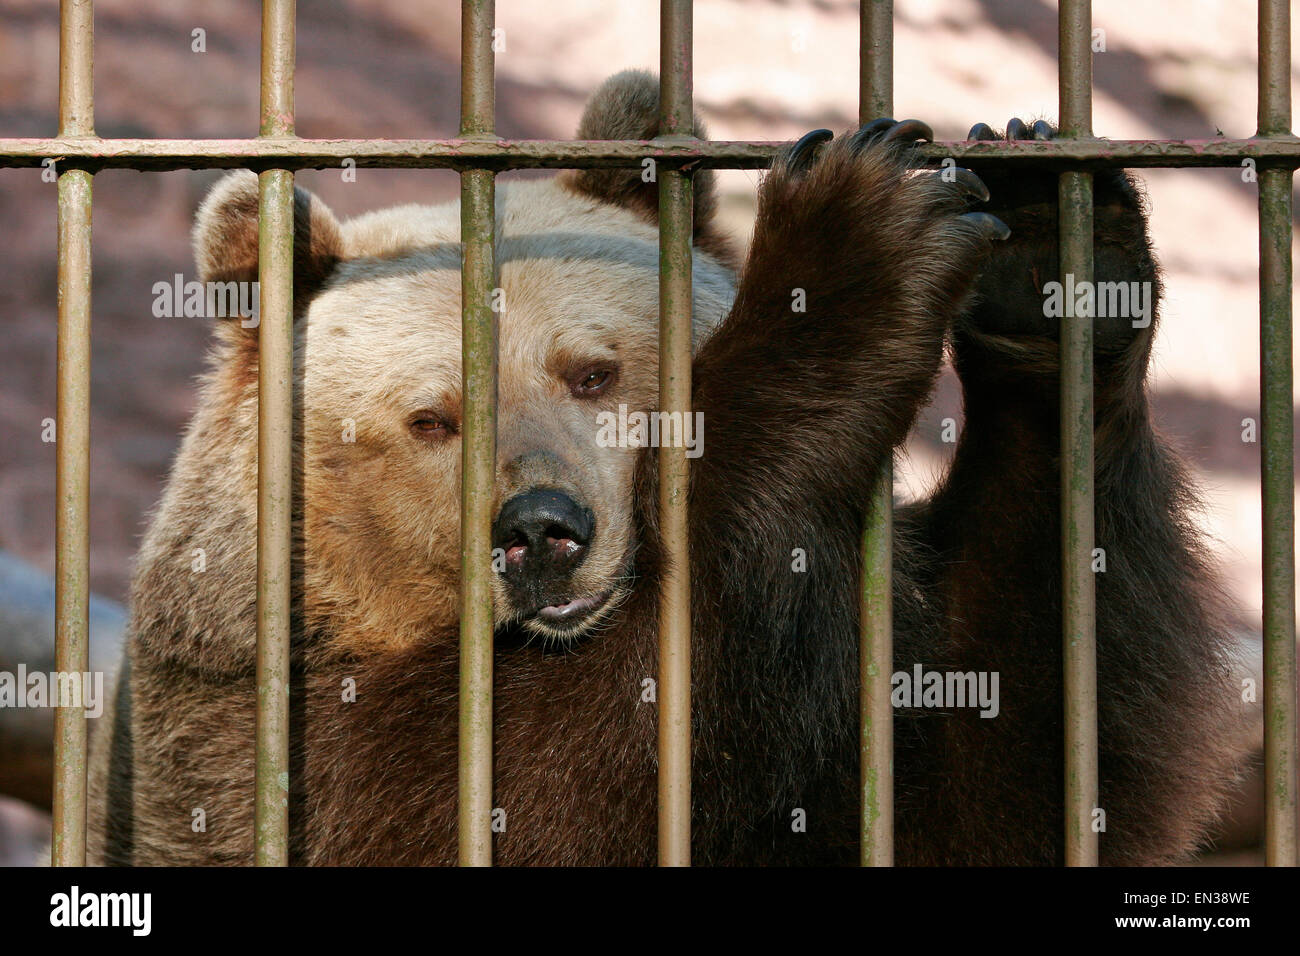 Unión oso pardo (Ursus arctos) en la jaula detrás de las rejas, cautiva, Turingia, Alemania Foto de stock